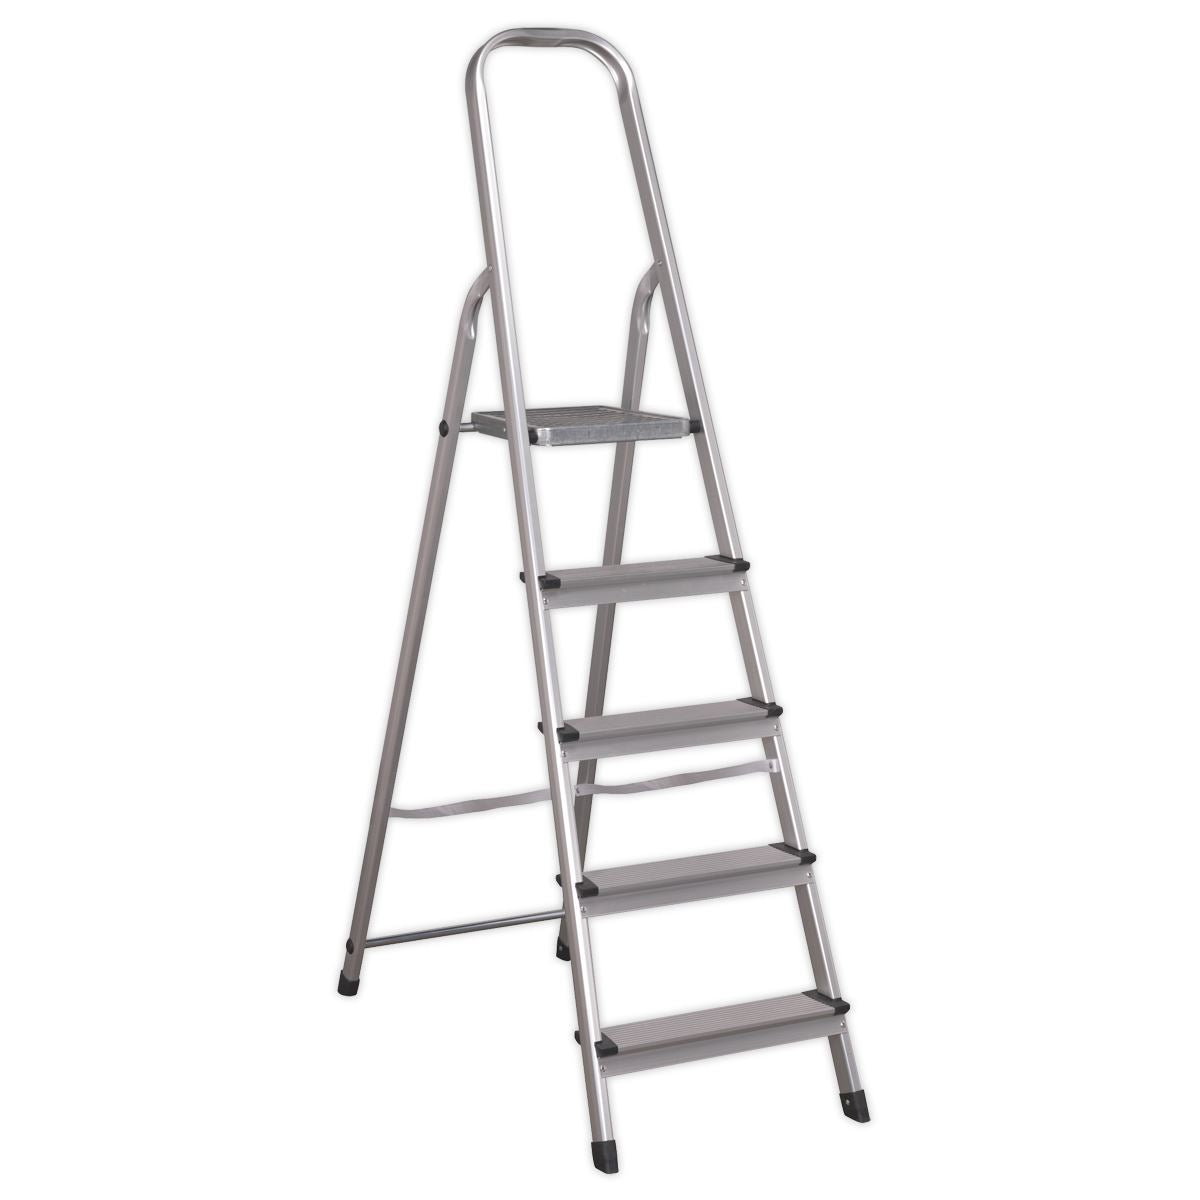 Sealey Aluminium Step Ladder 5-Tread EN 131